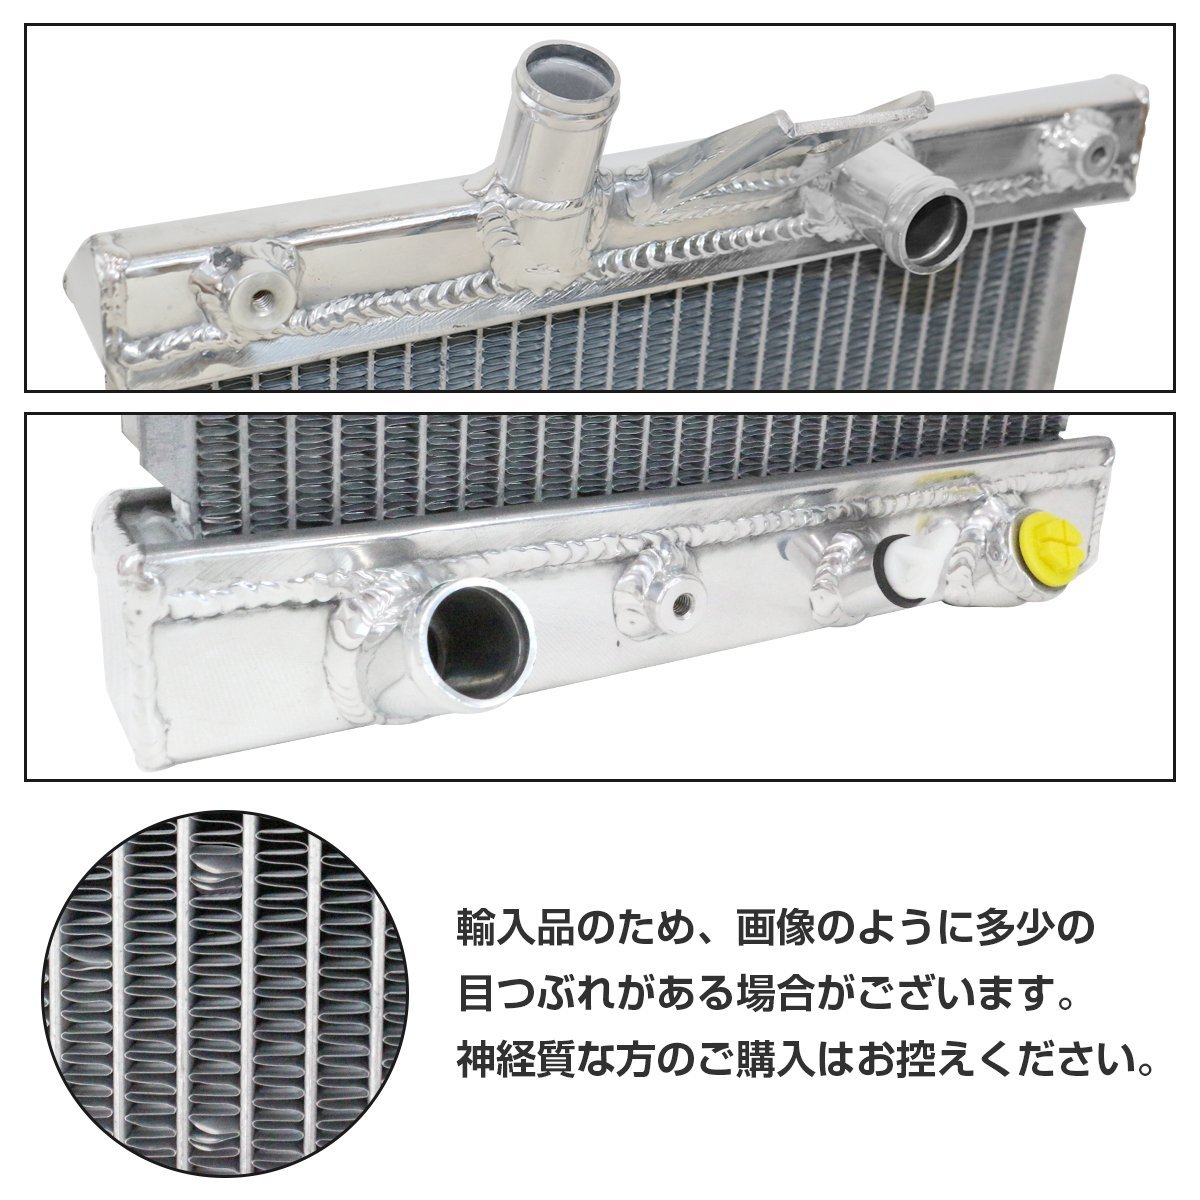 【新品即納】 アルミ製 ラジエーター ホンダ ビート PP1 アルミ ラジエター MT マニュアル 冷却 キャップ付き_rag-170-s